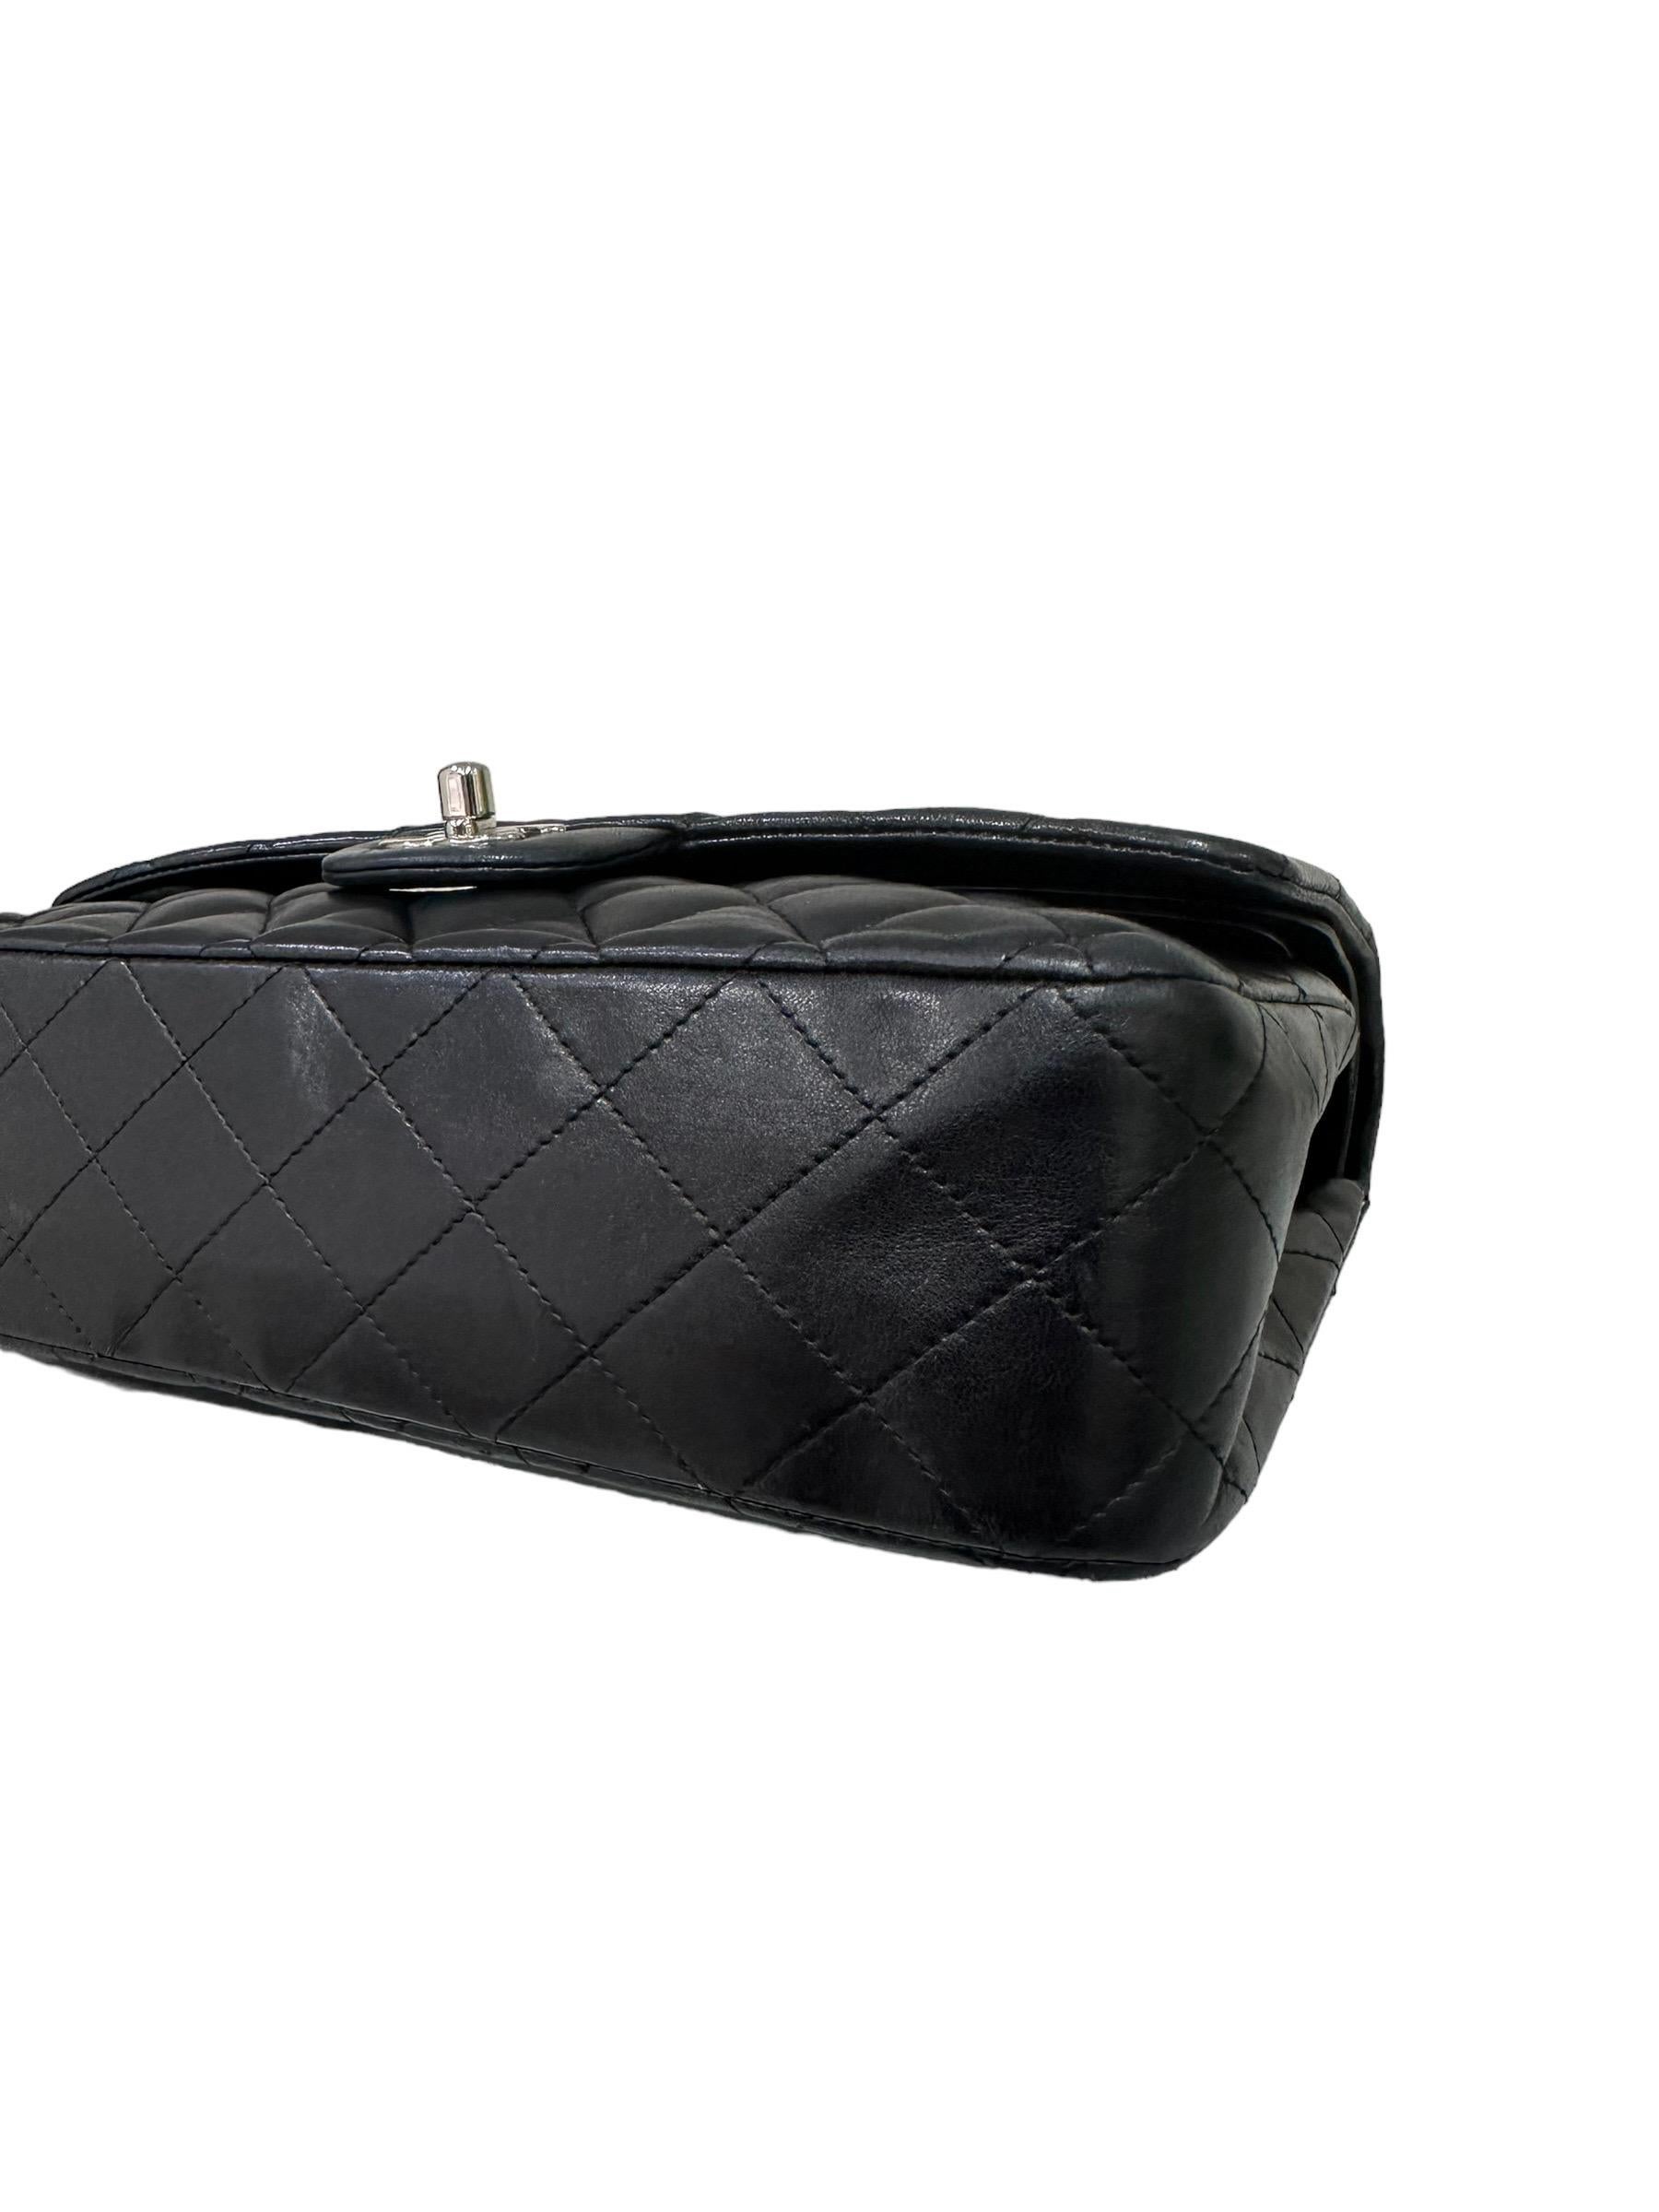 2008 Chanel. 2.55 Timeless Black Leather Shoulder Bag 8